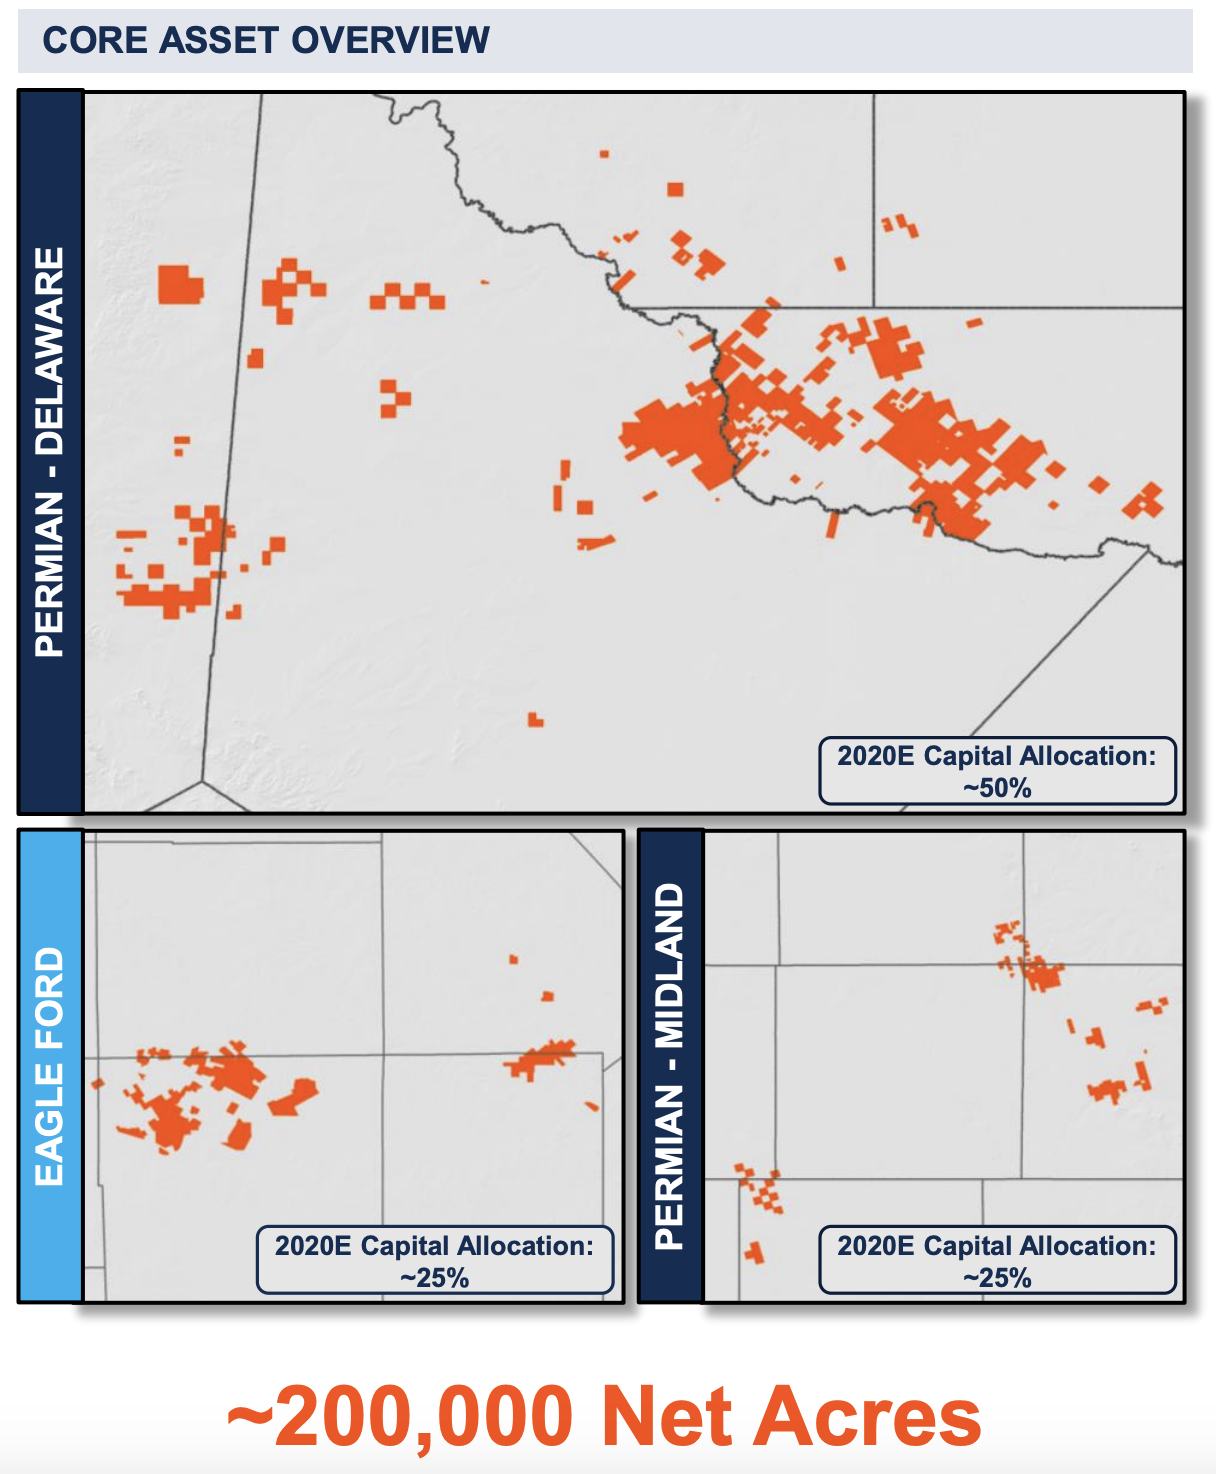 Callon Petroleum Pro Forma Core Asset Overview Map (Source: Callon Petroleum Co. July 2019 Investor Presentation)